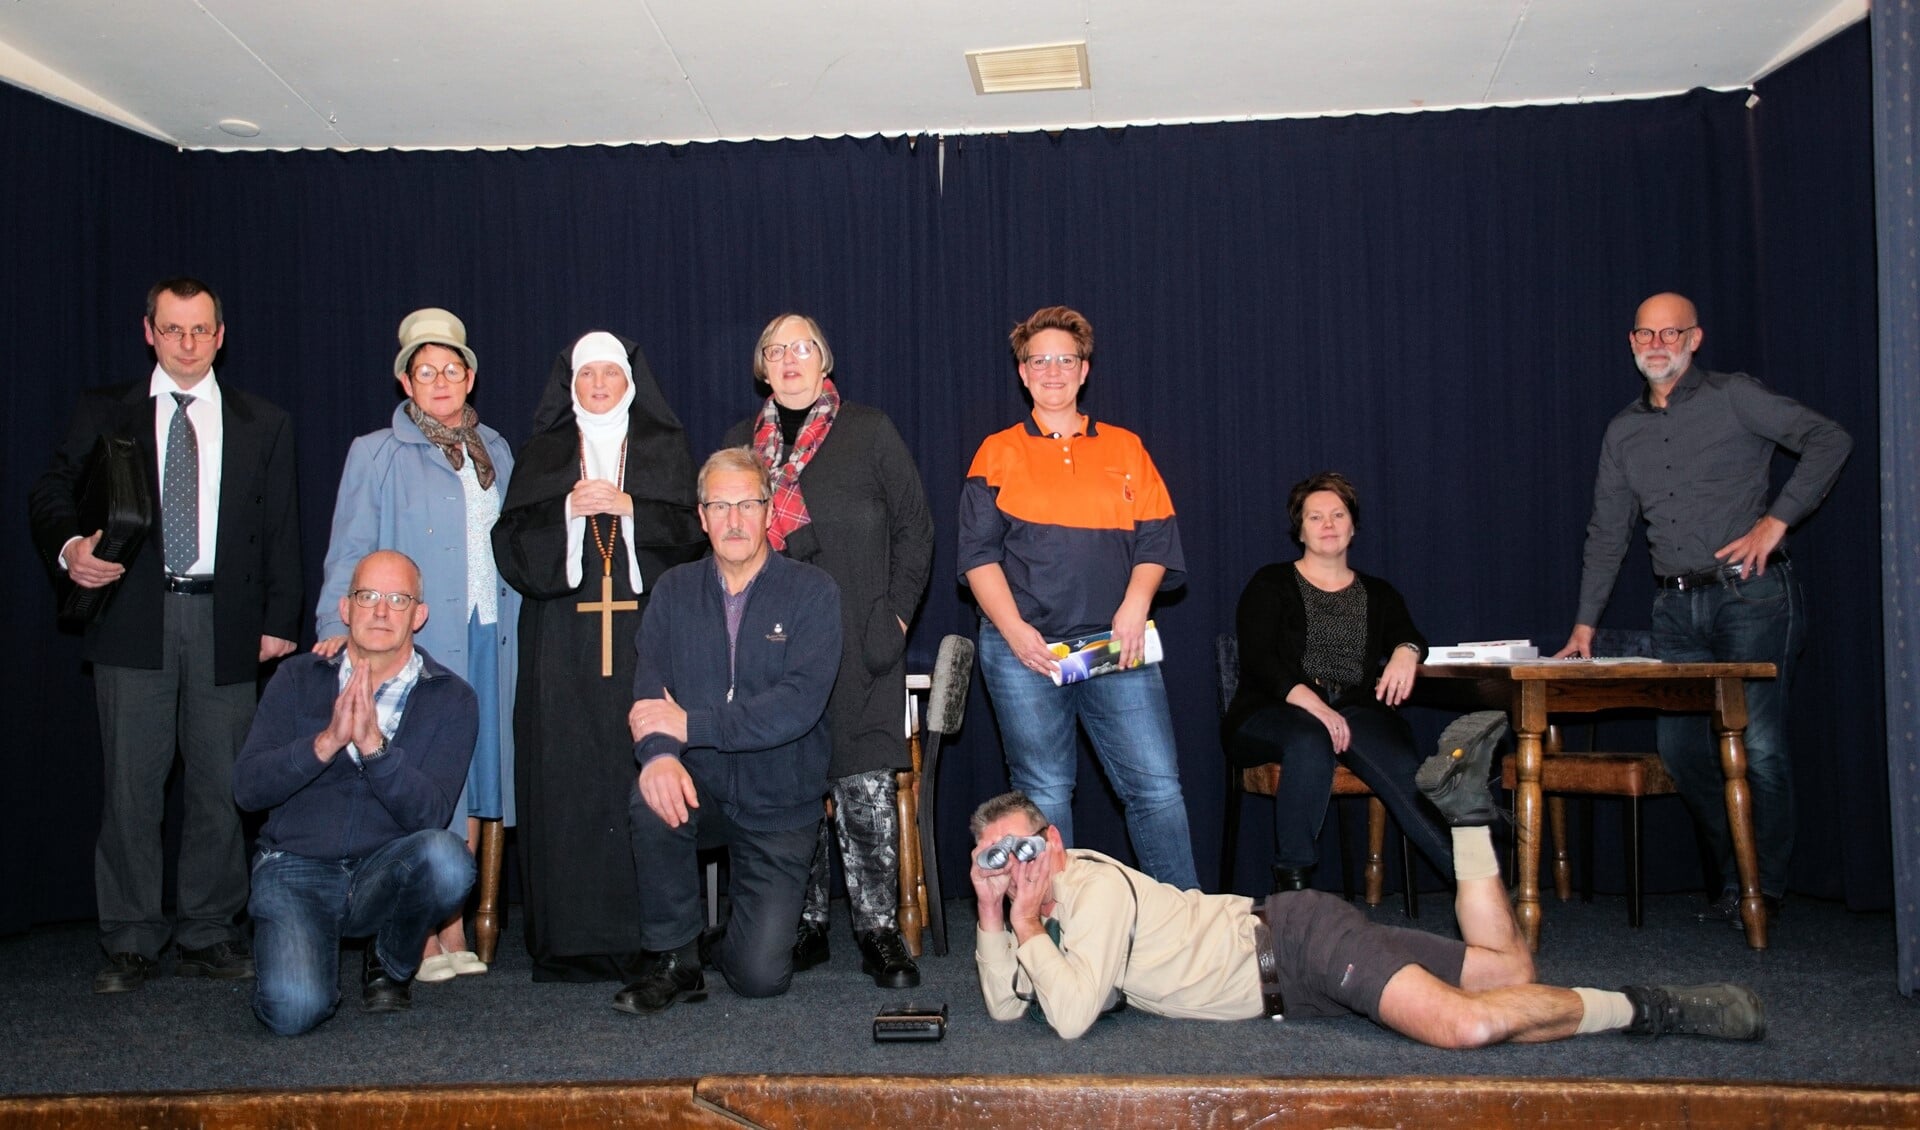 De cast van 'Nonnen over de vloer'. Foto: Frank Vinkenvleugel